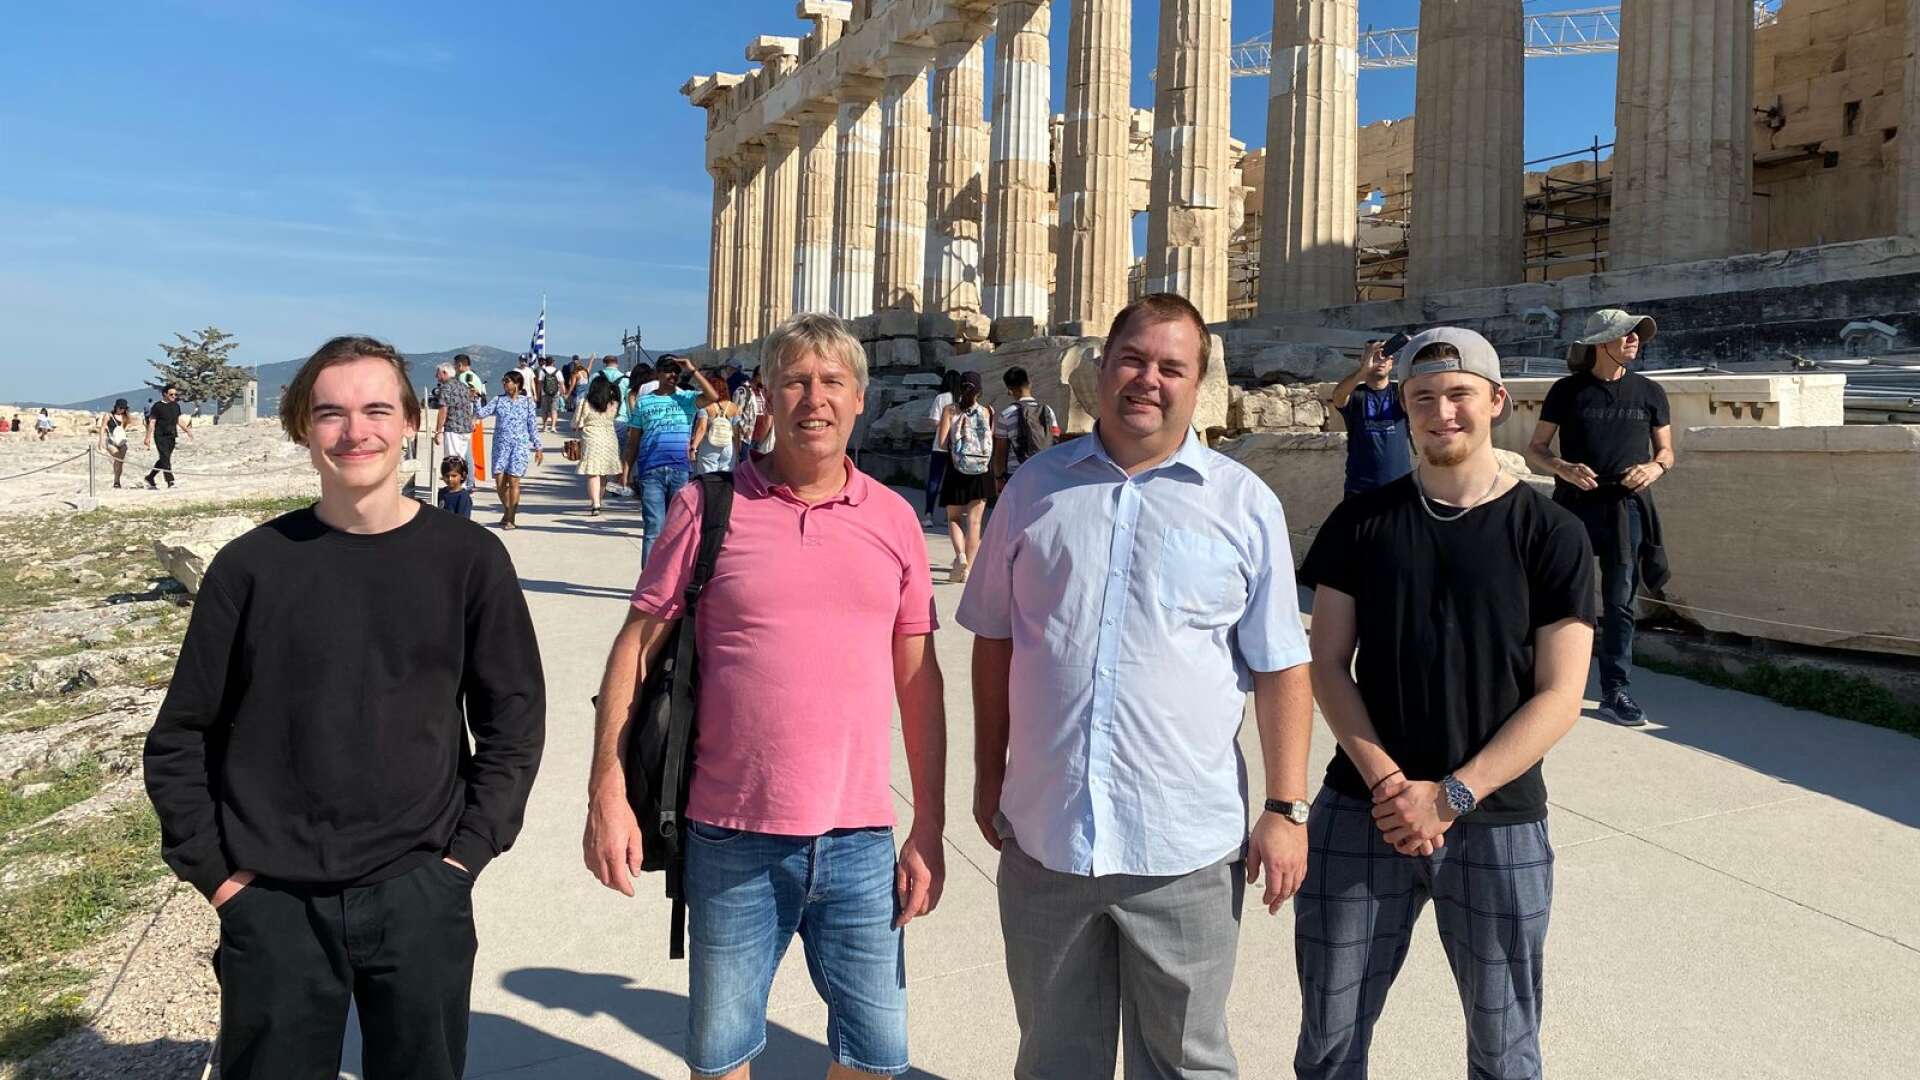 Innan bussresan till Volos på söndagen besöktes klassiska Akropolis i Aten. På bilden ses Leo Becker, Anders Andersson, Martin Andersson och Viktor Månsson.